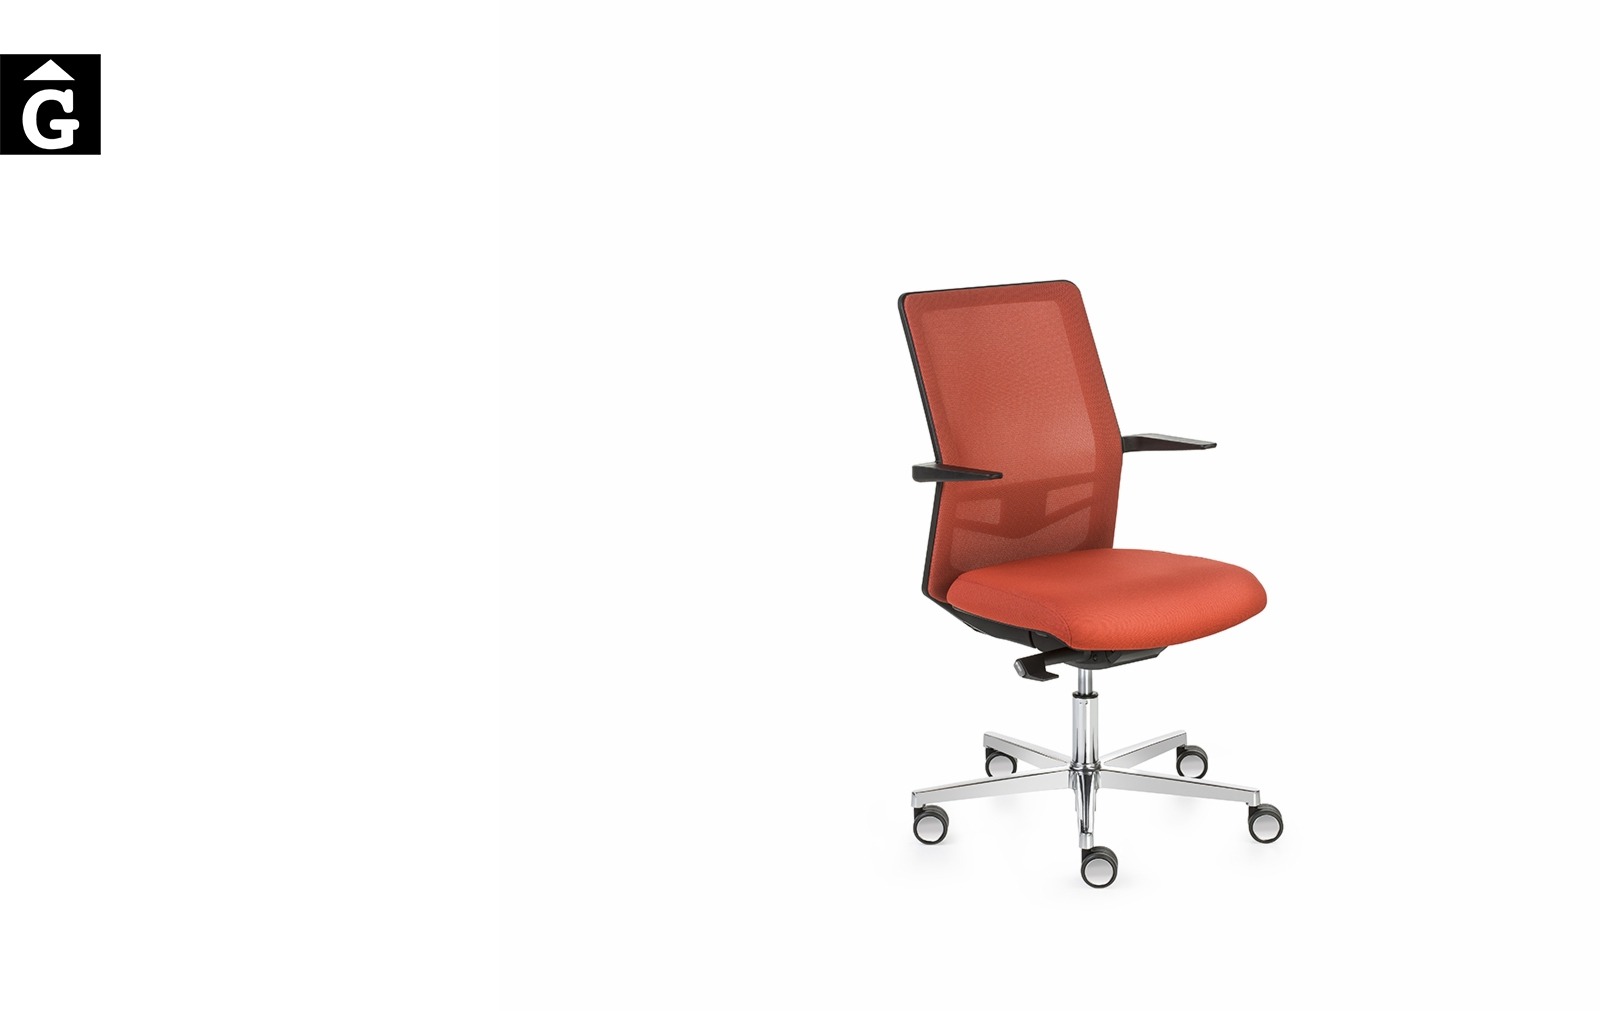 Cadira despatx Equis de Jorge Pensi | Vista perfil | Dile | mobiliari d’oficina molt interessant | mobles Gifreu | botiga | Contract | Mobles nous oficina